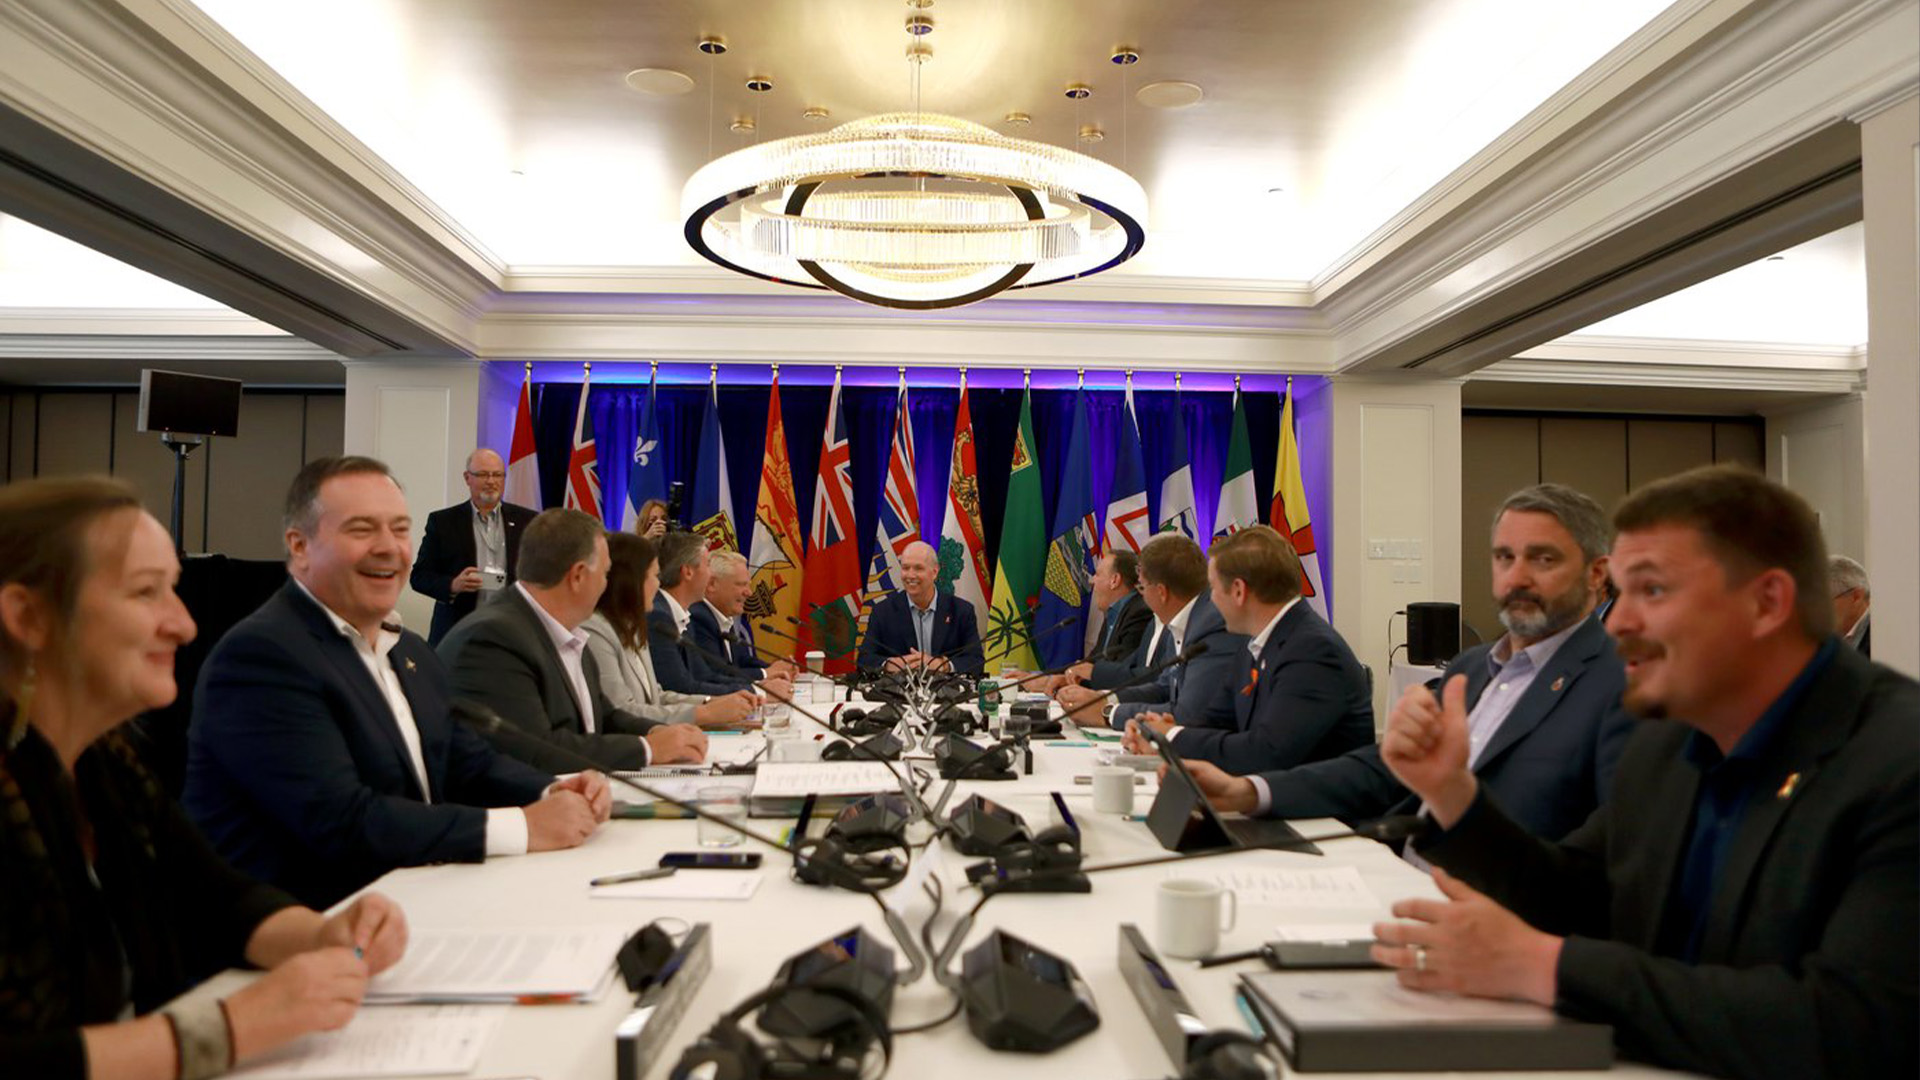 Les premiers ministres se mêlent lors d'une séance de photos lors de la réunion d'été des premiers ministres du Canada au Fairmont Empress à Victoria, le lundi 11 juillet 2022.